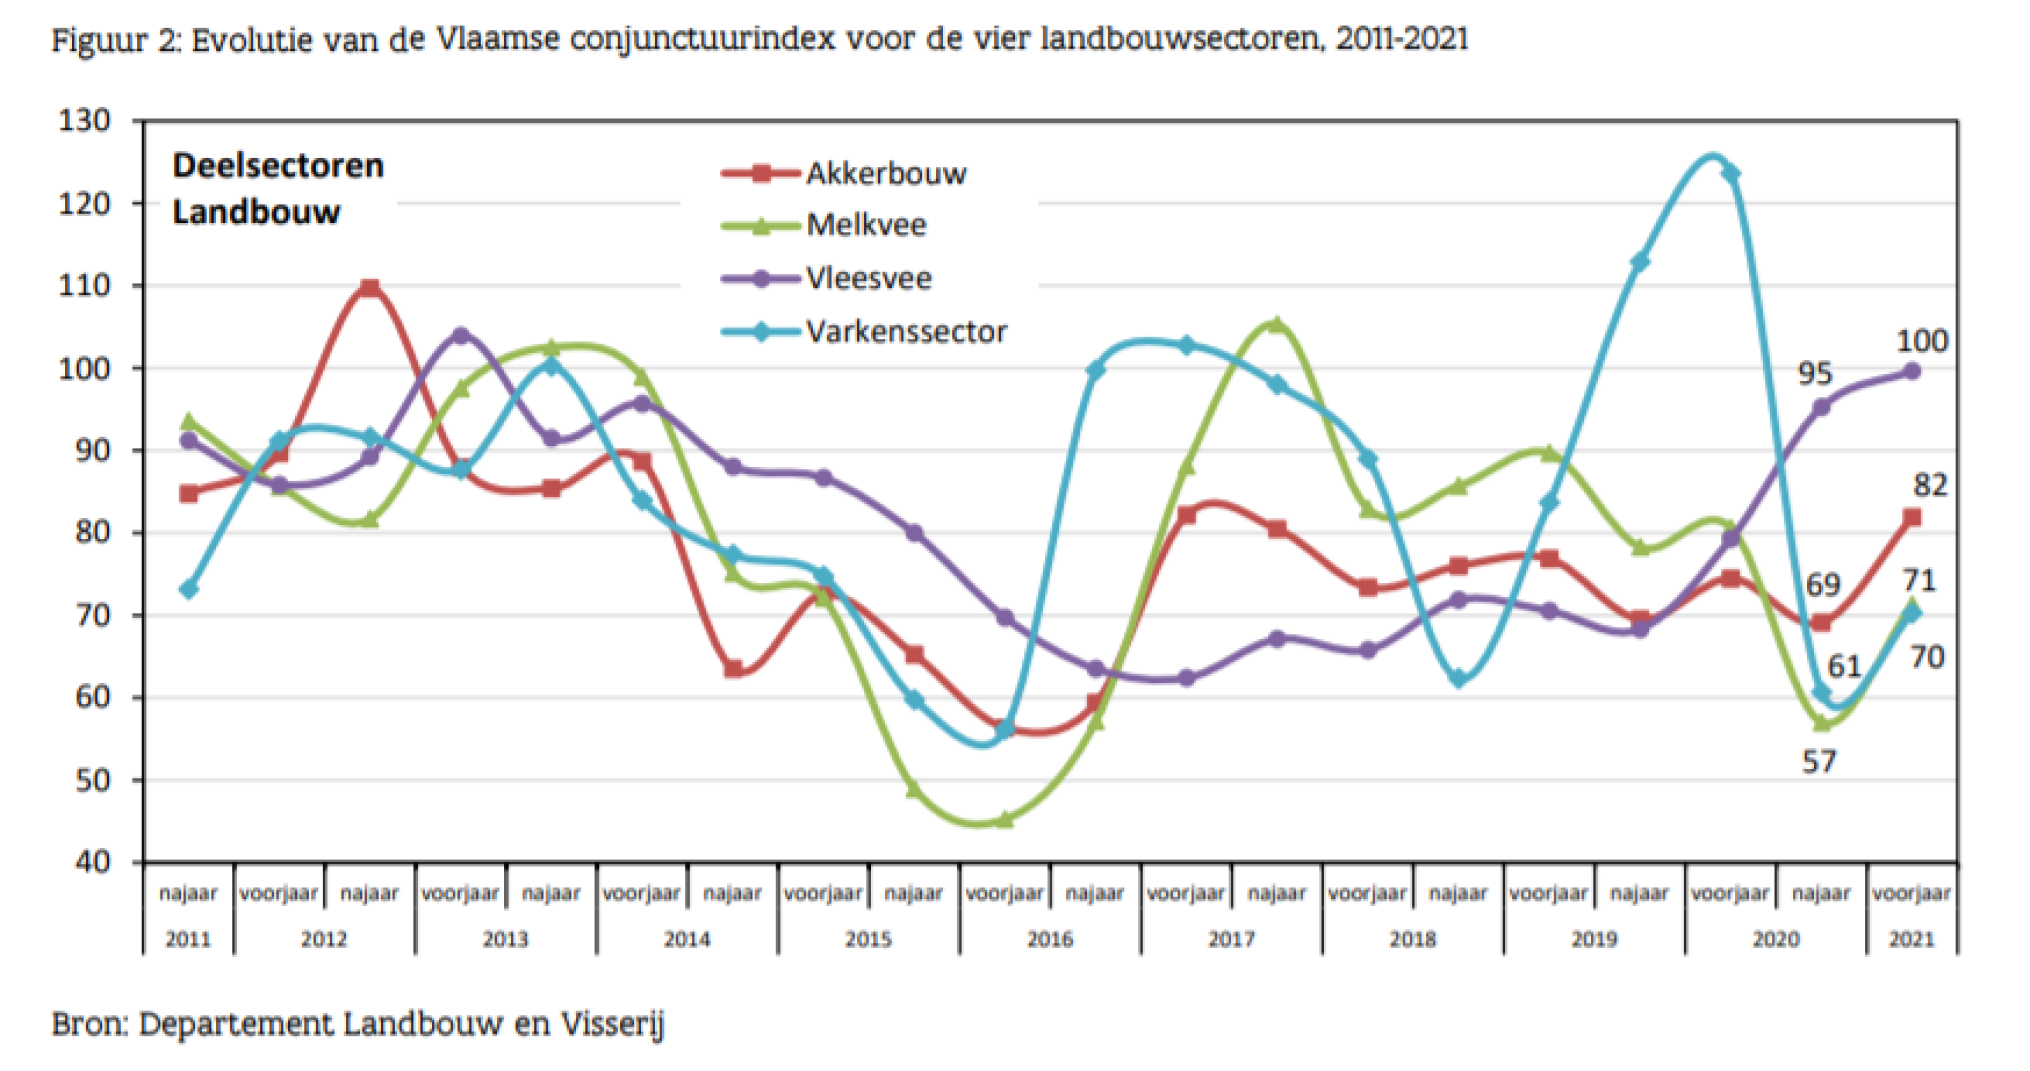 Vlaamse conjunctuurindex voor de vier landbouwsectoren, 2011-2021